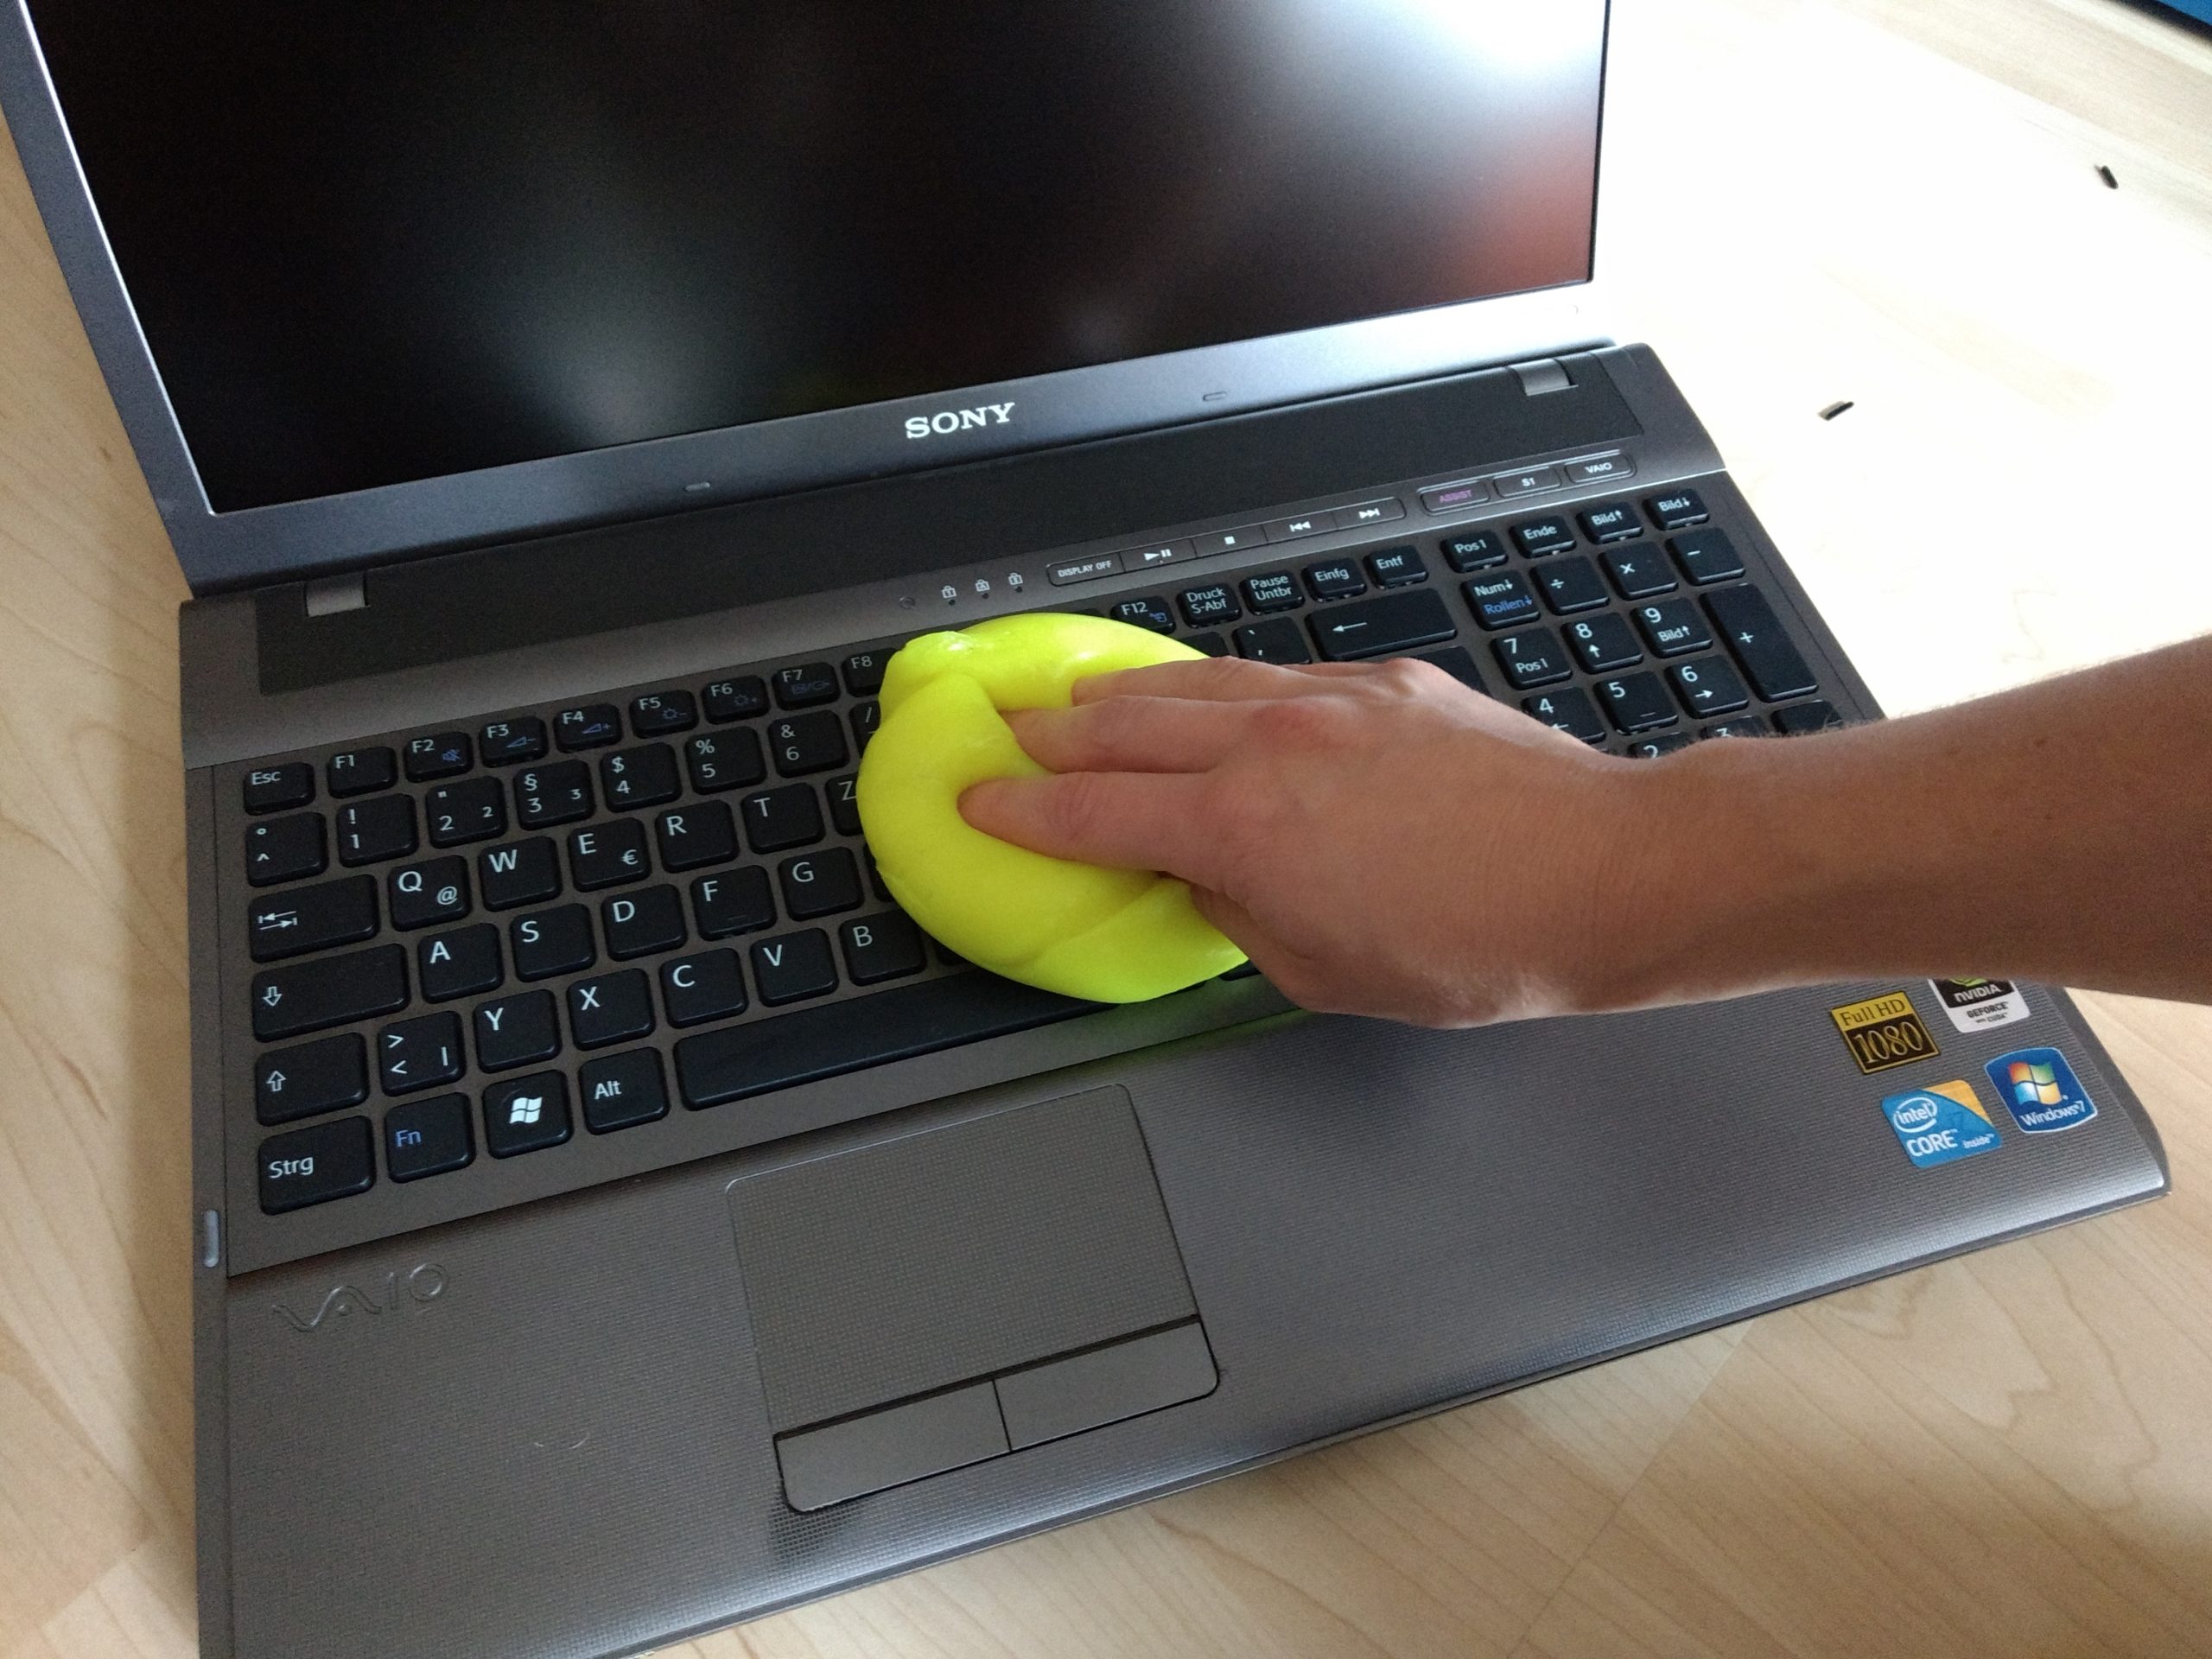 Die Tastatur eines SONY-Laptops wird mit einer gelben Reinigungsmasse gesäubert und desinfiziert.